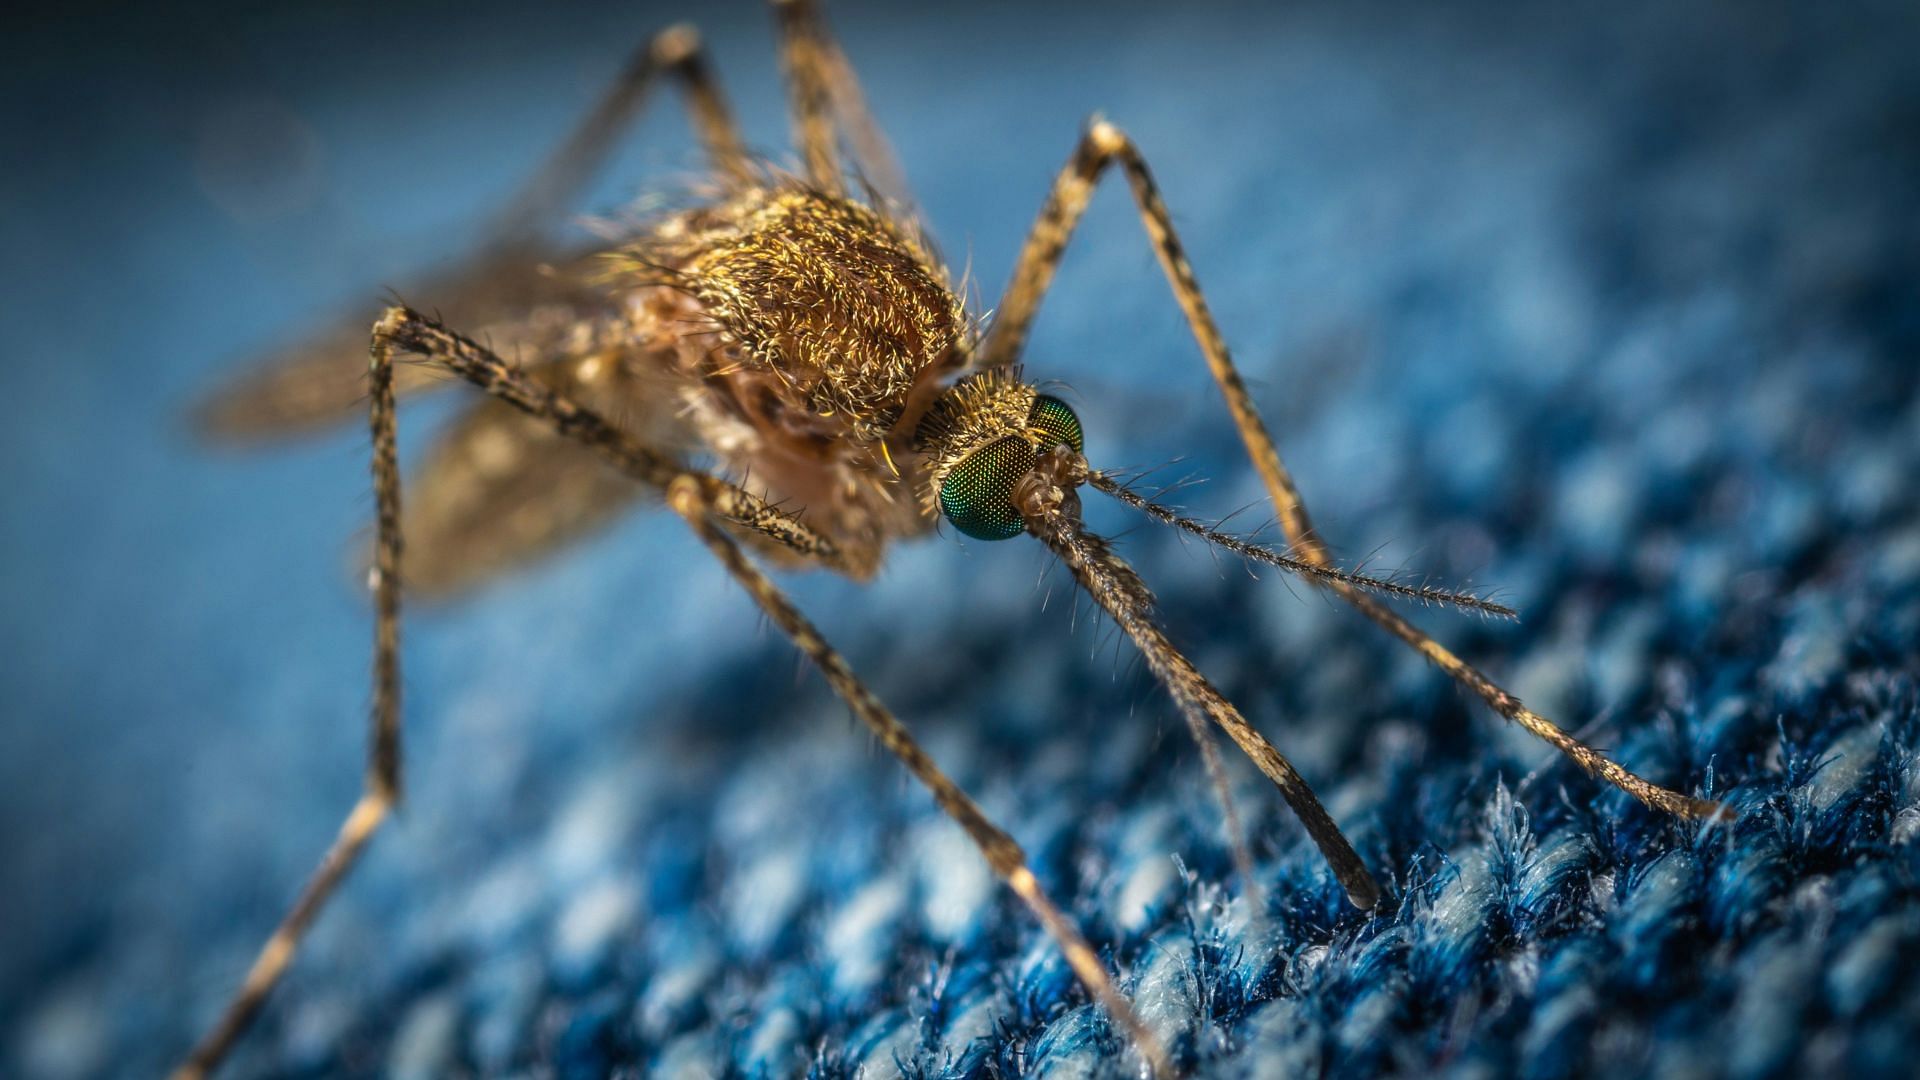 Zika Virus (Image via Unsplash/Ekamelev)